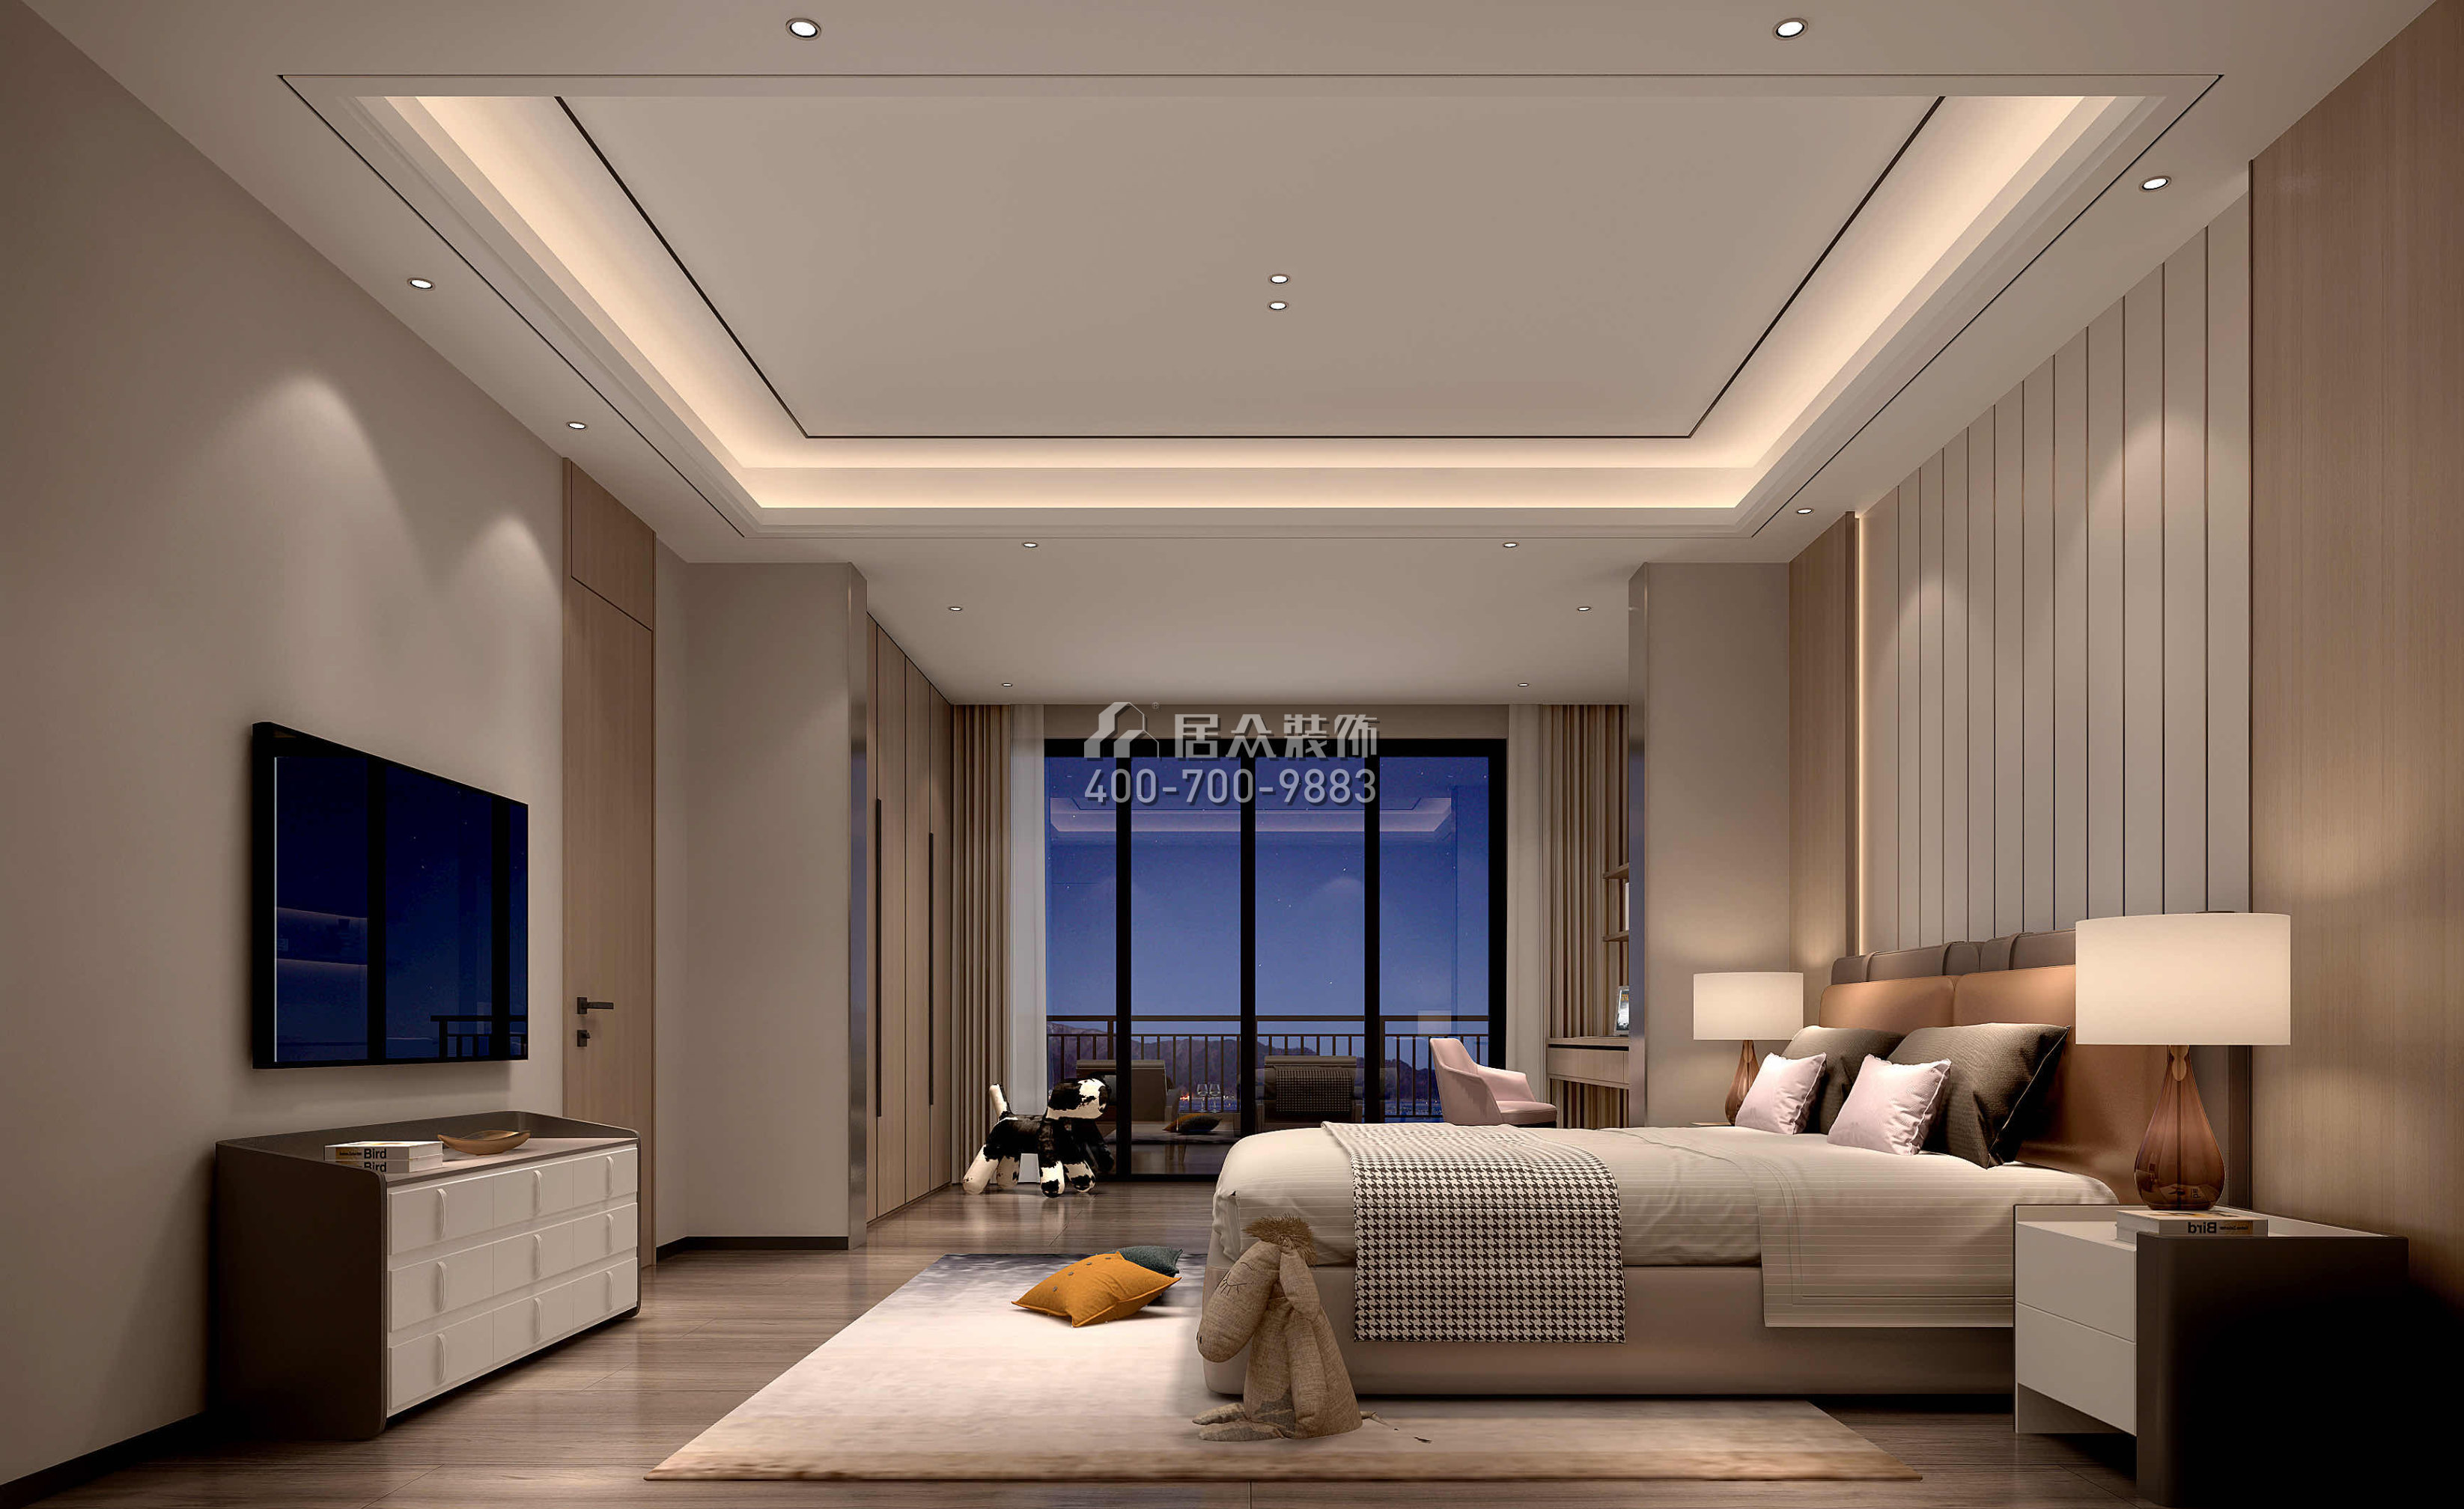 海逸豪庭366平方米现代简约风格别墅户型卧室装修效果图